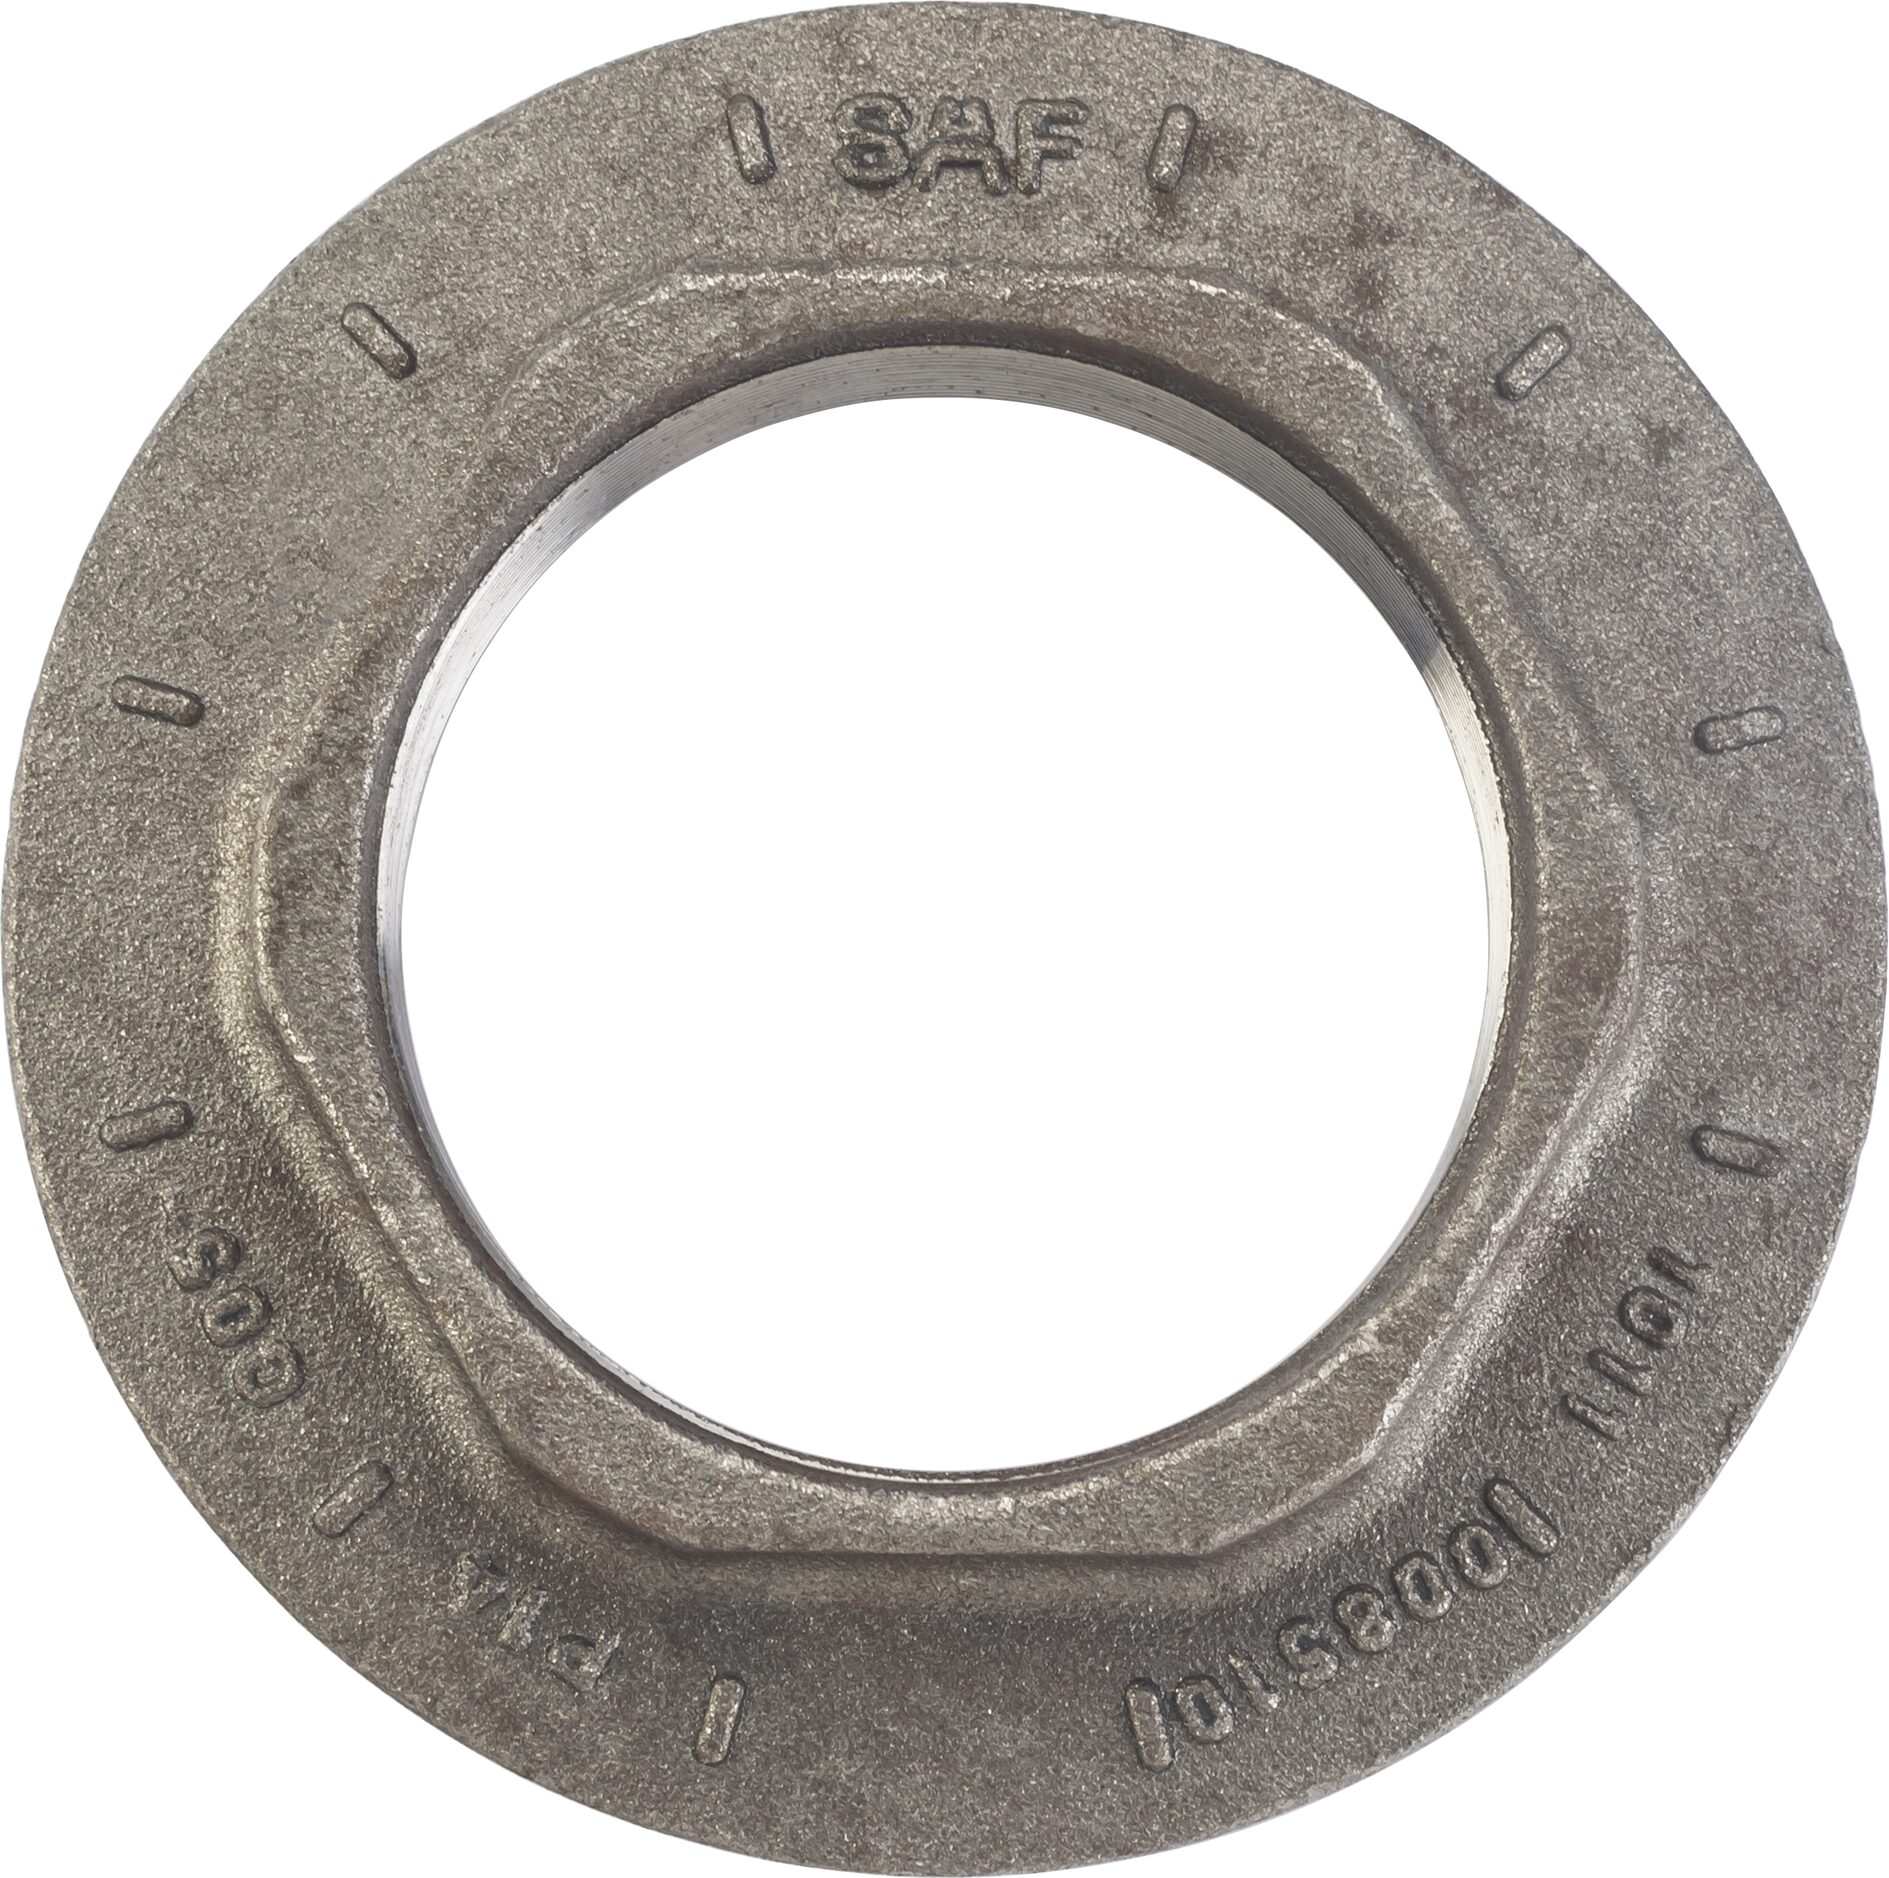 HAZET Nkw Achsmutter-Steckschlüssel 4937-85 · Außen Sechskant Profil · 85 mm